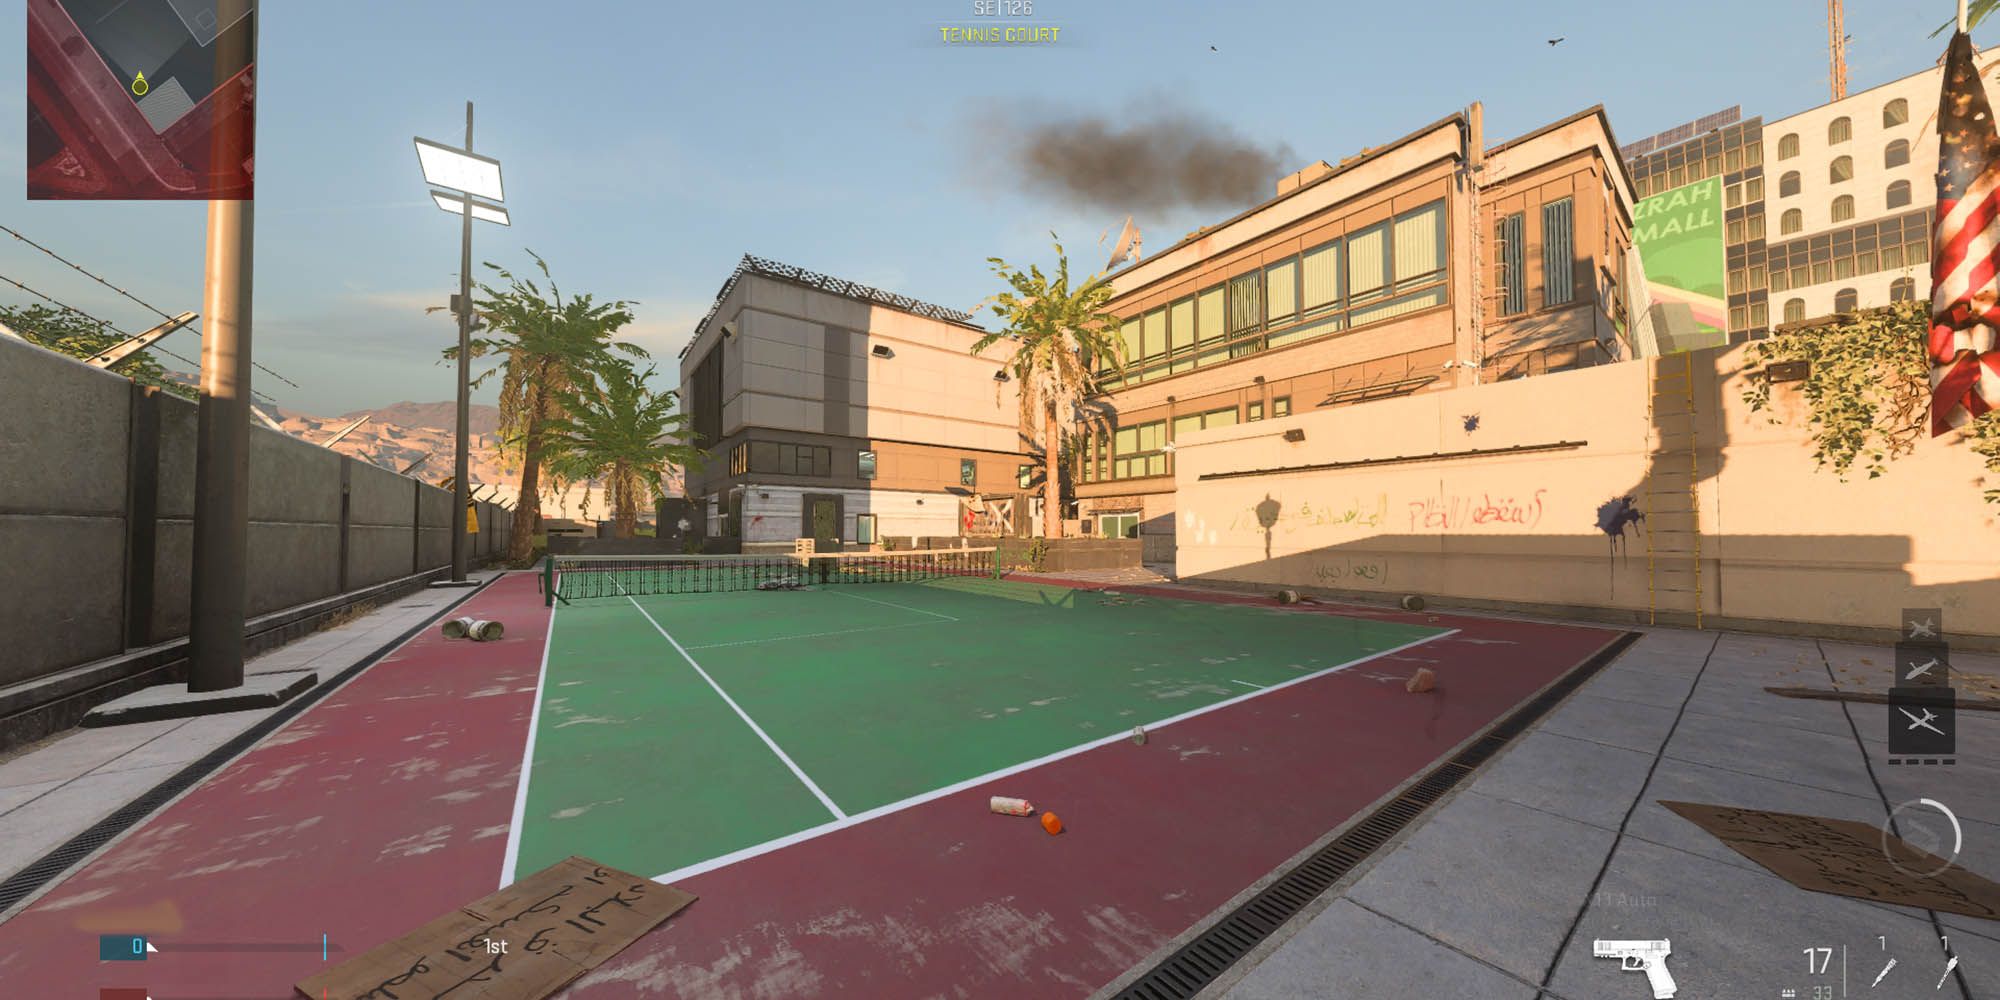 Modern Warfare 2 tennis court nearby an embassy building